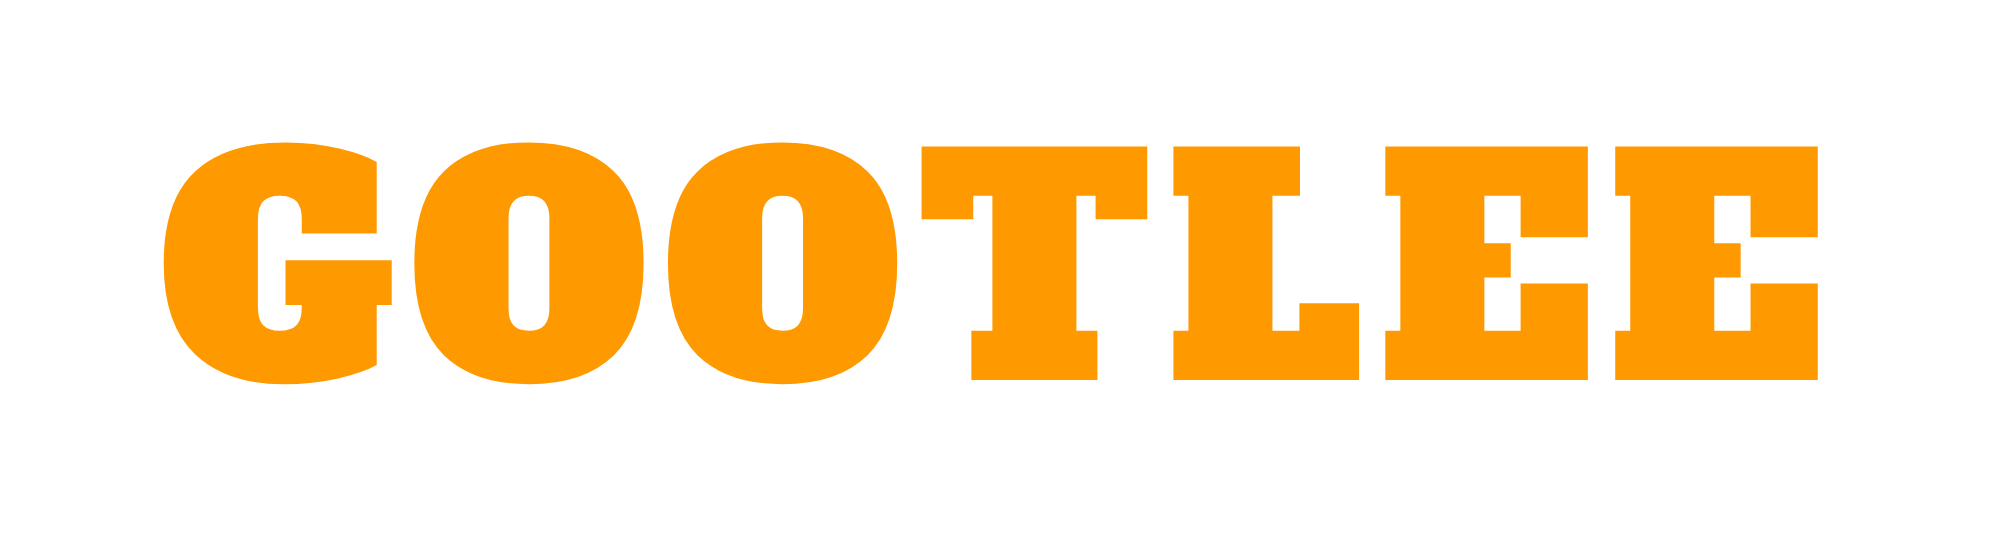 Gootlee Logo